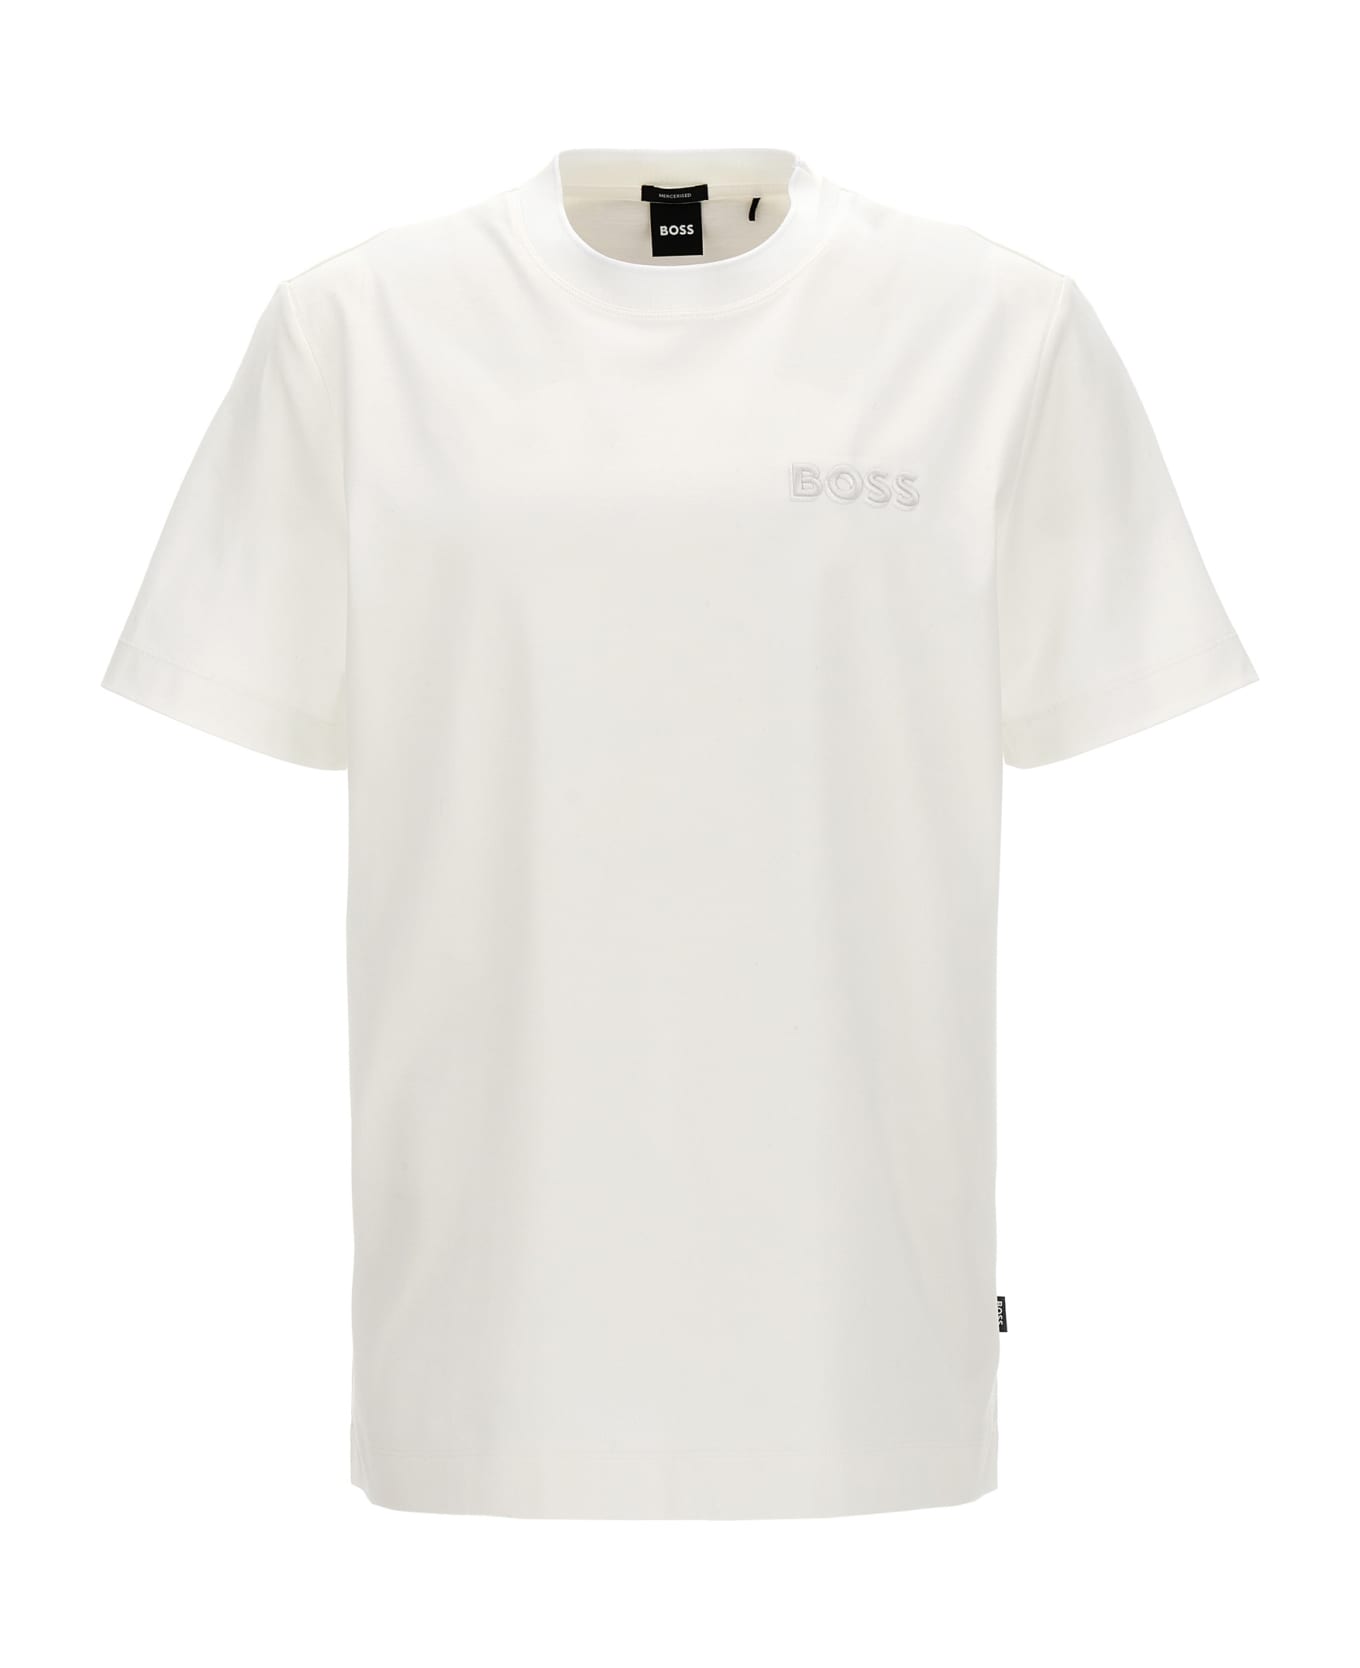 Hugo Boss Logo T-shirt - White